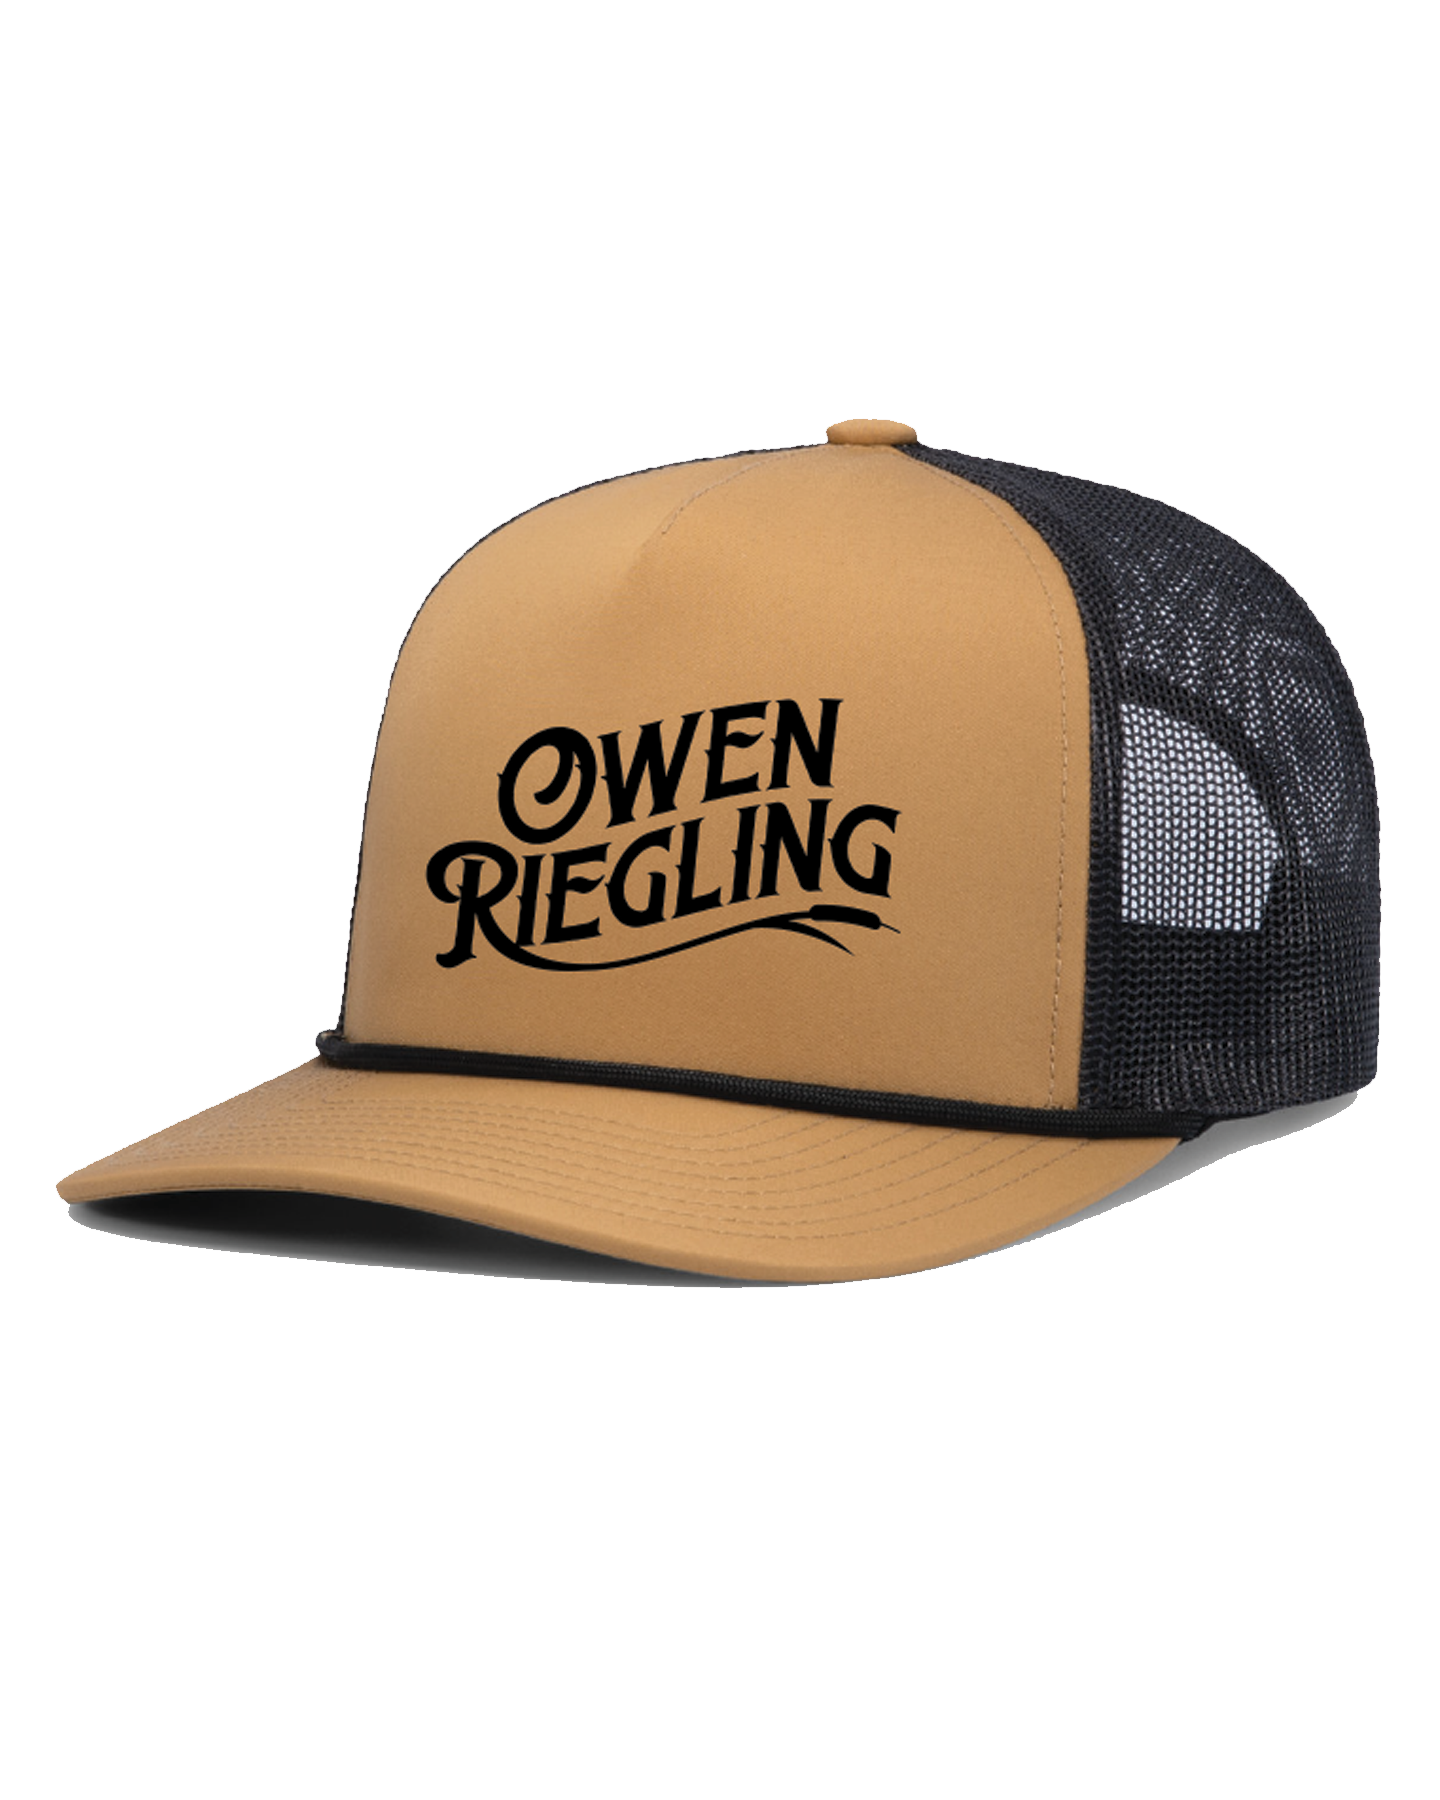 Owen Riegling Sand Trucker Hat